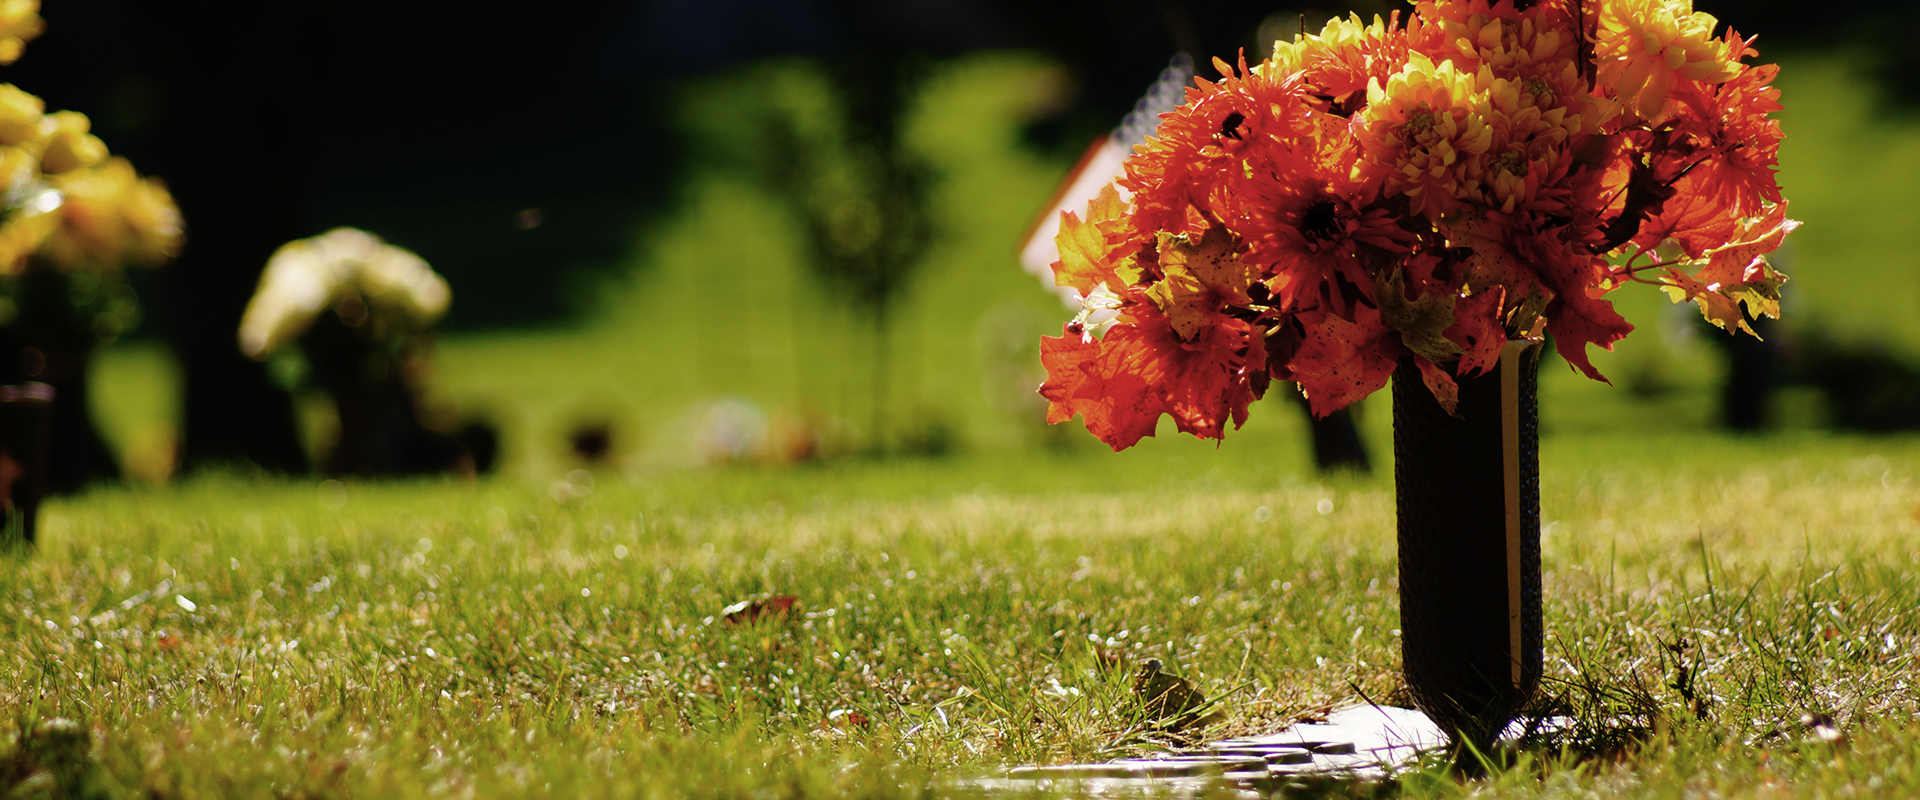 Tumba con ramo de flores rojas y amarillas en un cementerio parque 